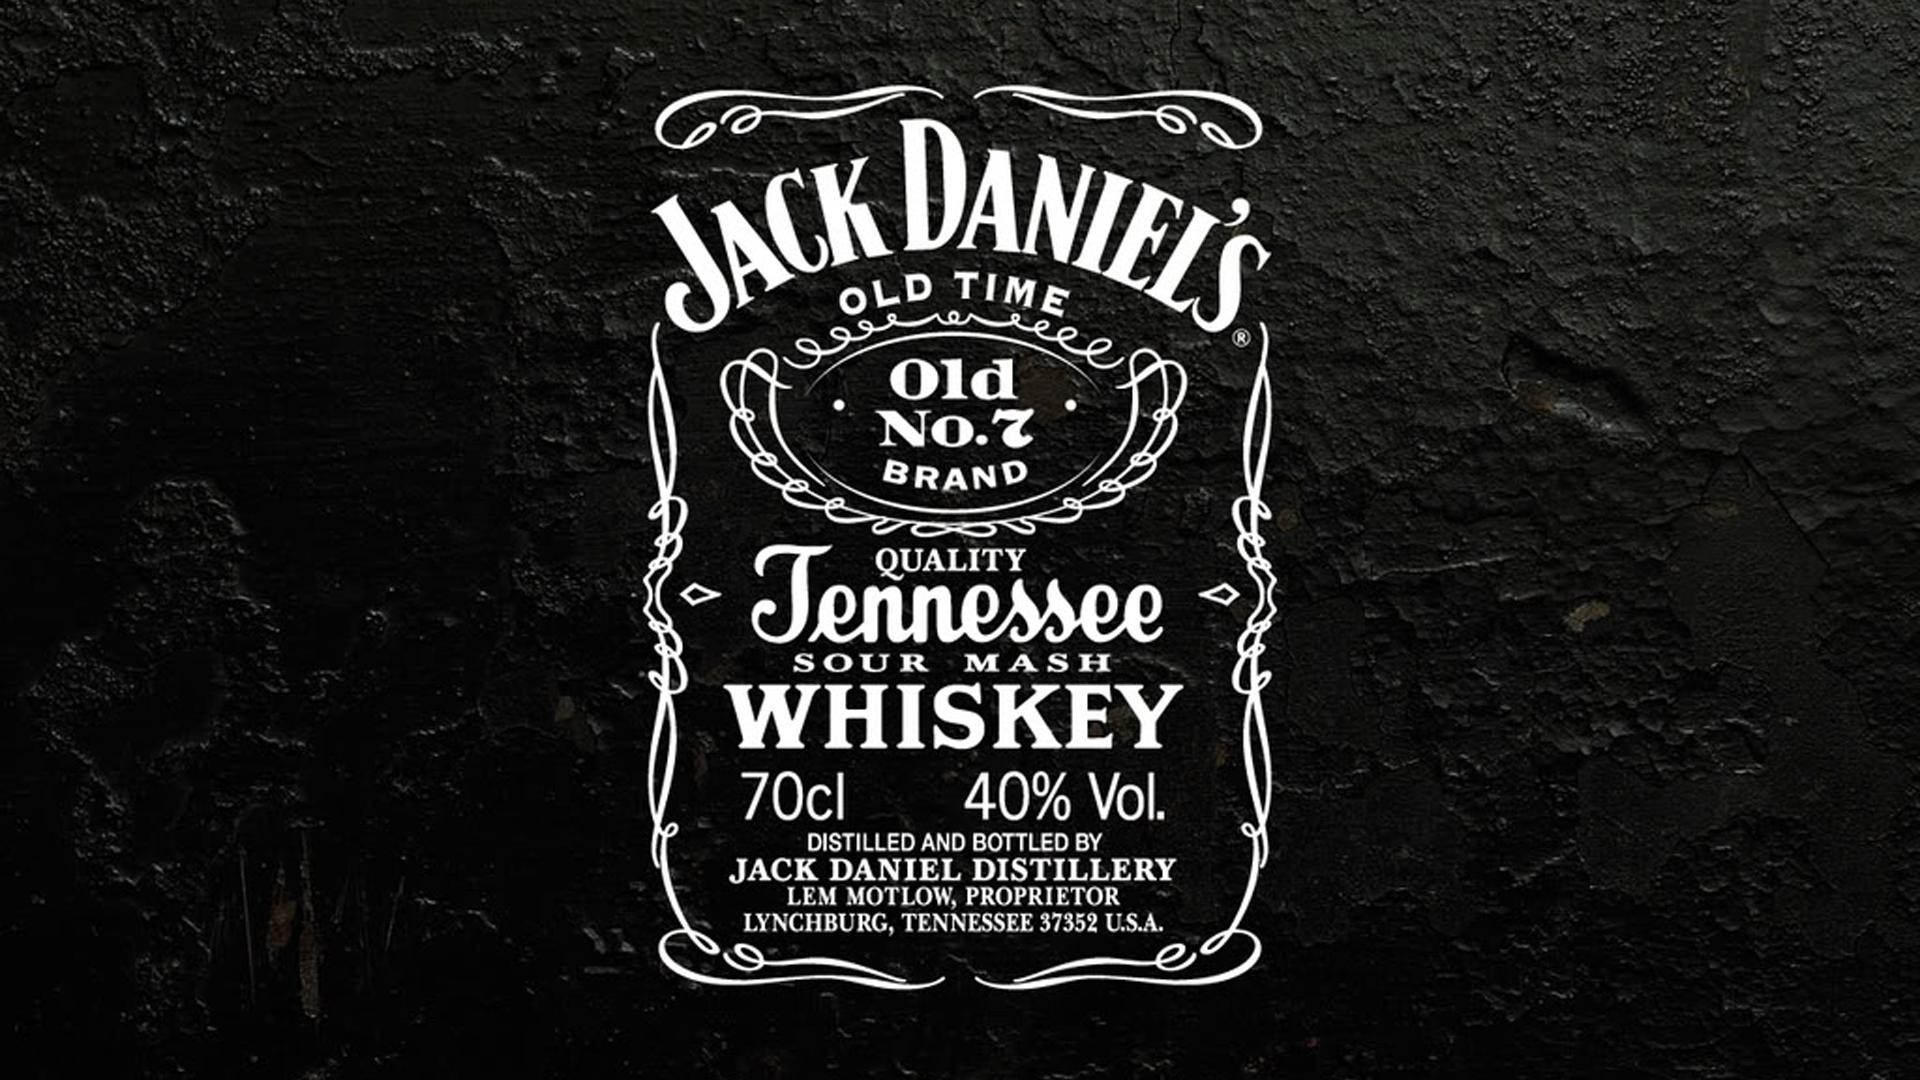 1920x1080 Jack Daniels Wallpapers - Wallpaper Cave